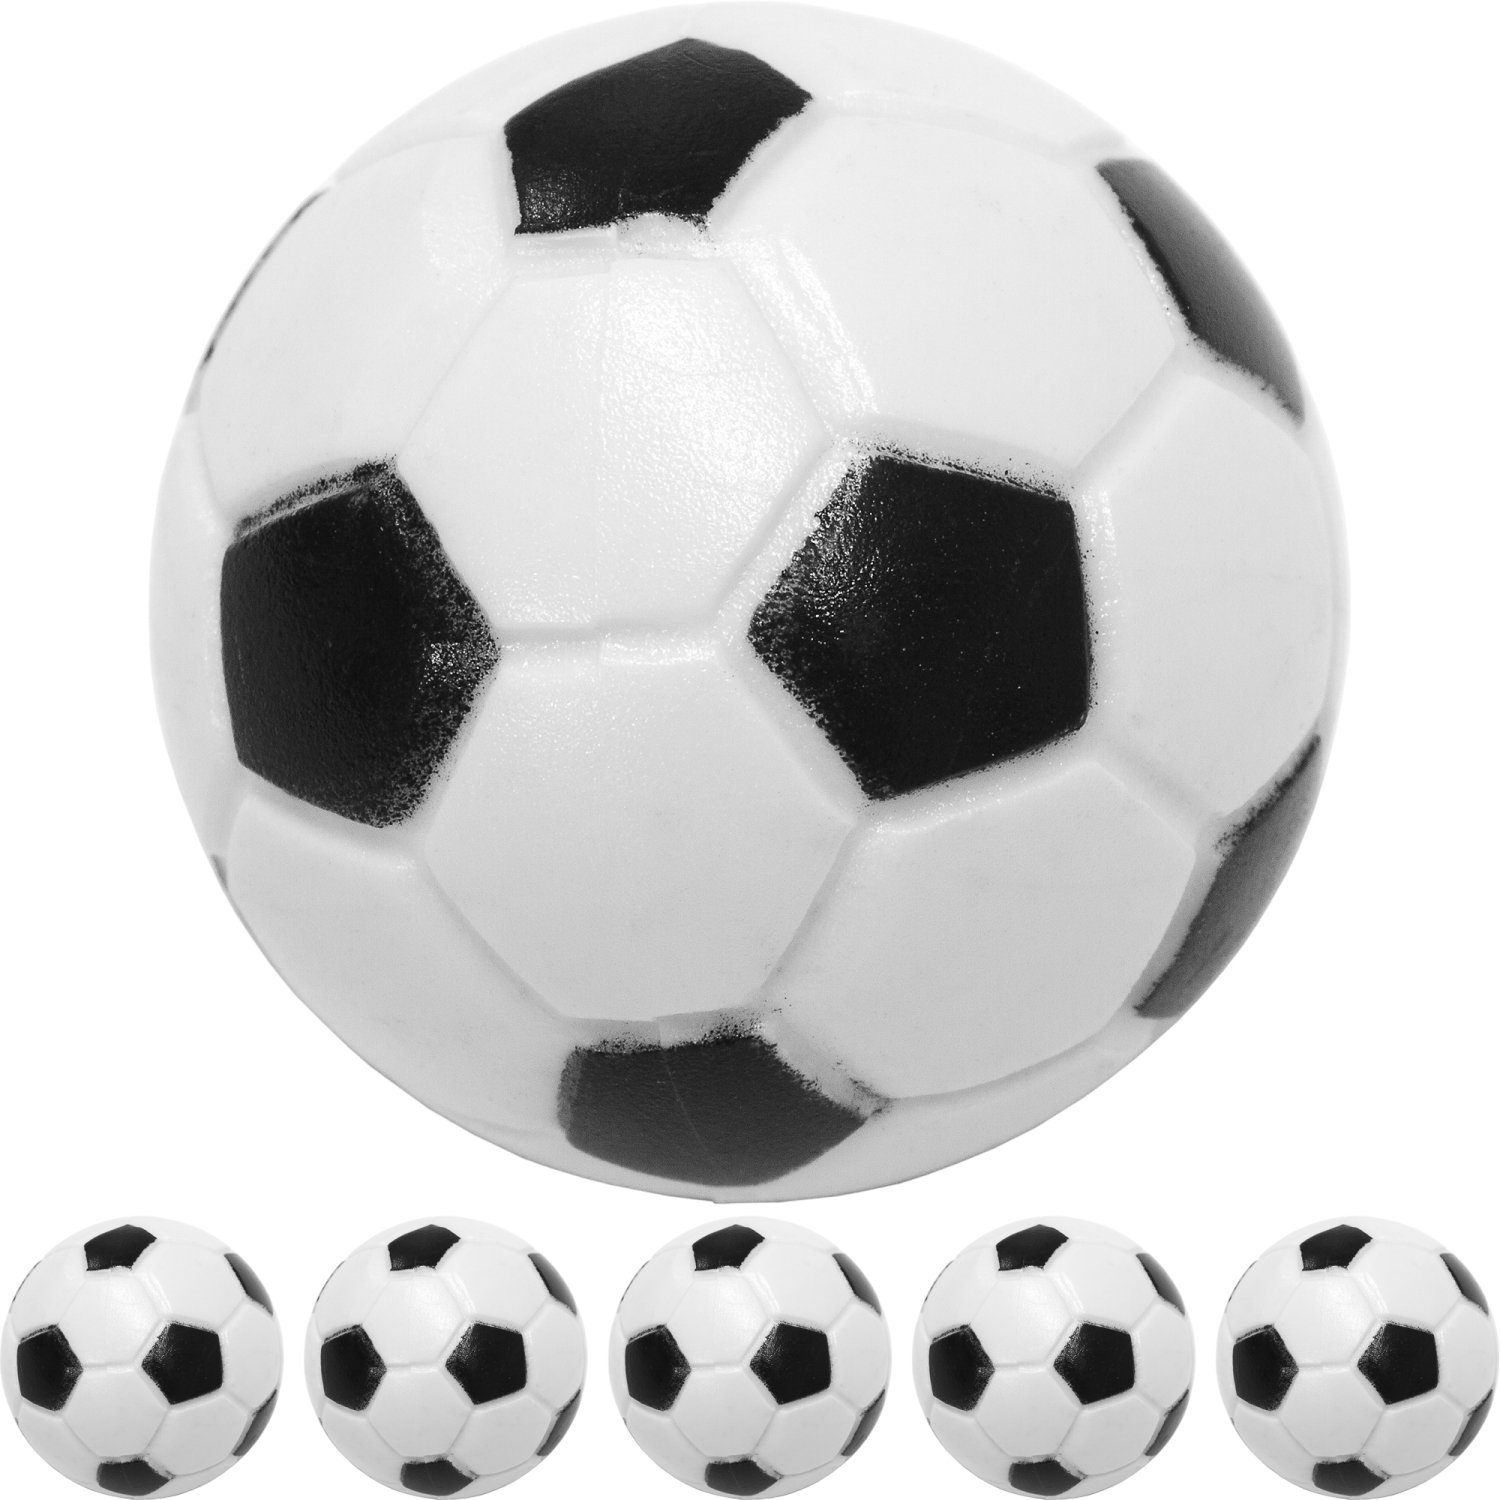 GAMES PLANET Spielball Games Planet Kicker Bälle, 5 oder 10 Stück (Set, 5er Pack), Farbe: schwarz/weiß (Klassische Fußball-Optik), hart und schnell, Durchmesser 31mm, Tischfussball Kickerbälle Ball